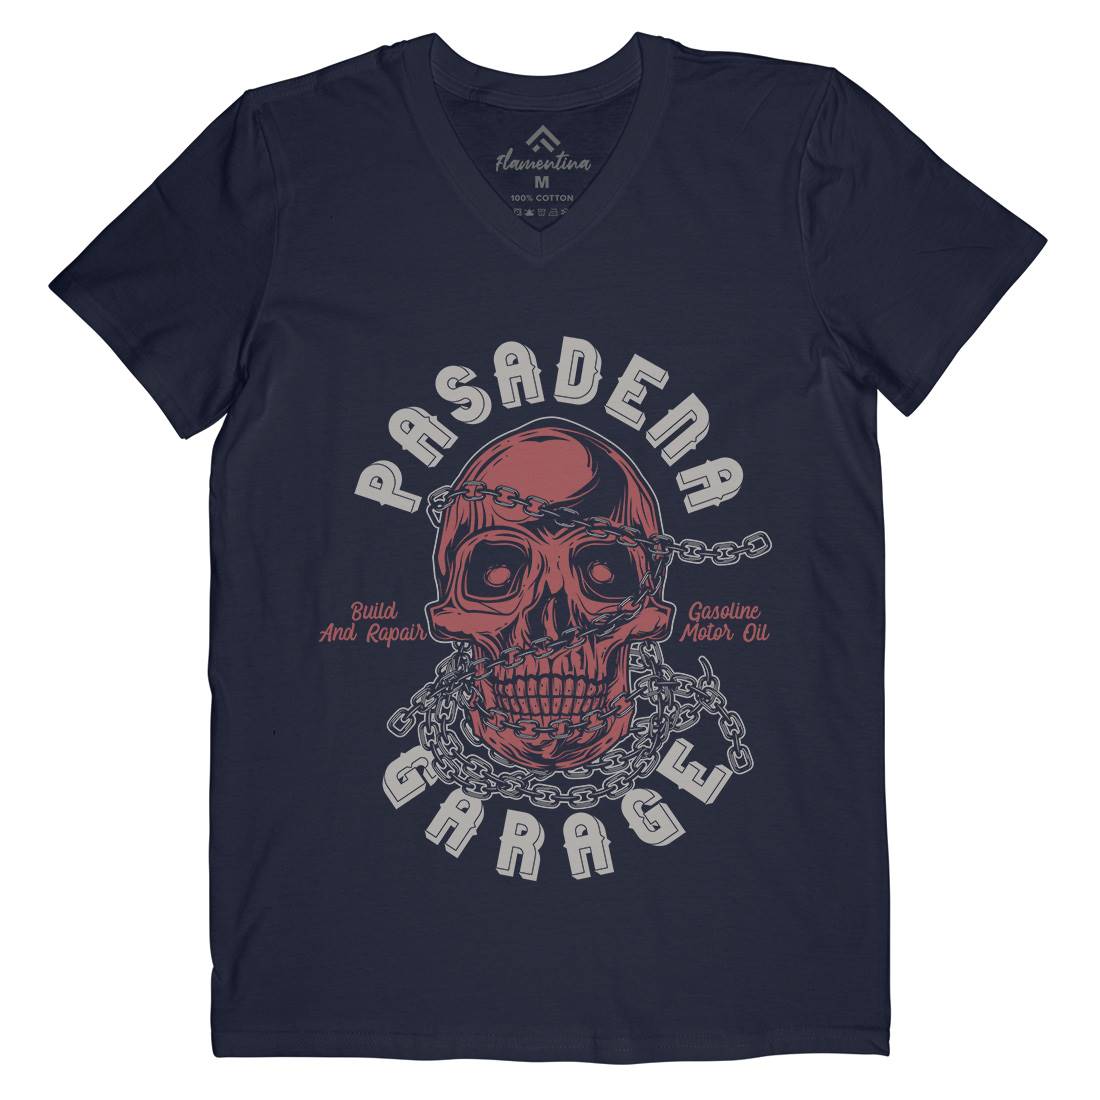 Pasadena Mens Organic V-Neck T-Shirt Motorcycles B847